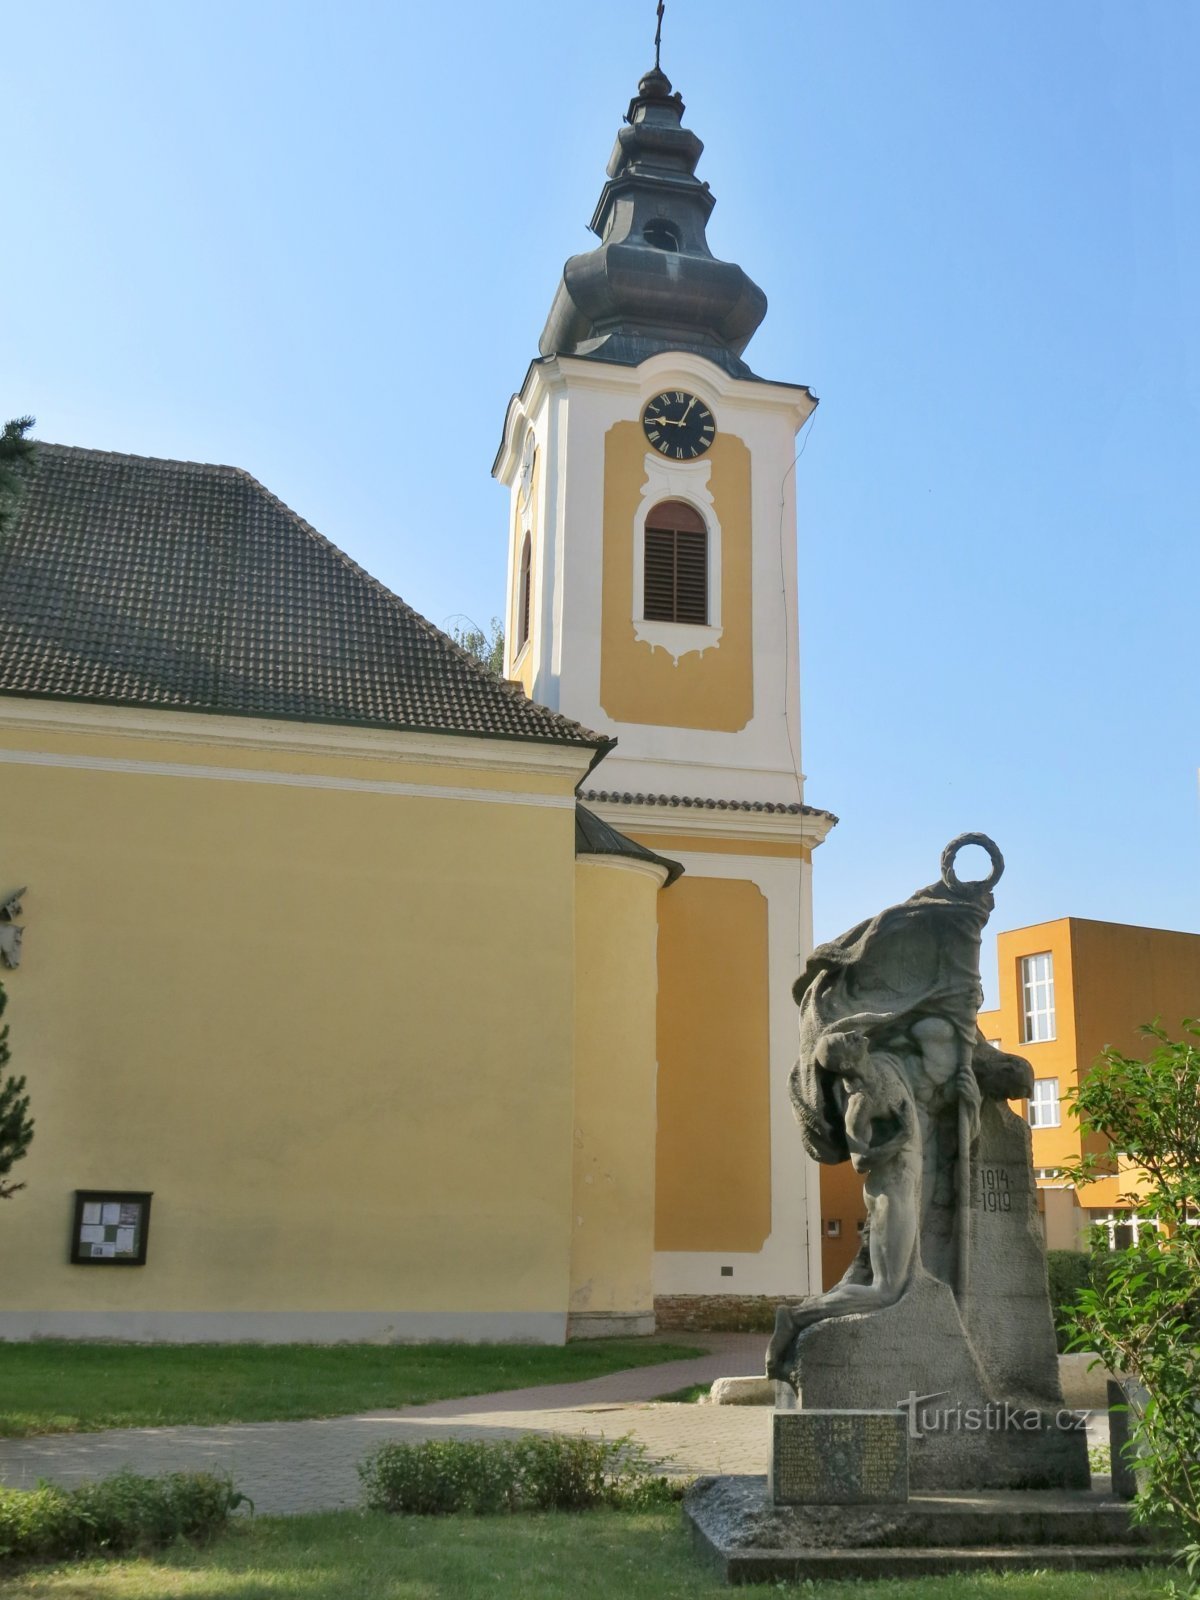 Planá nad Lužnicí - nhà thờ St. Wenceslas